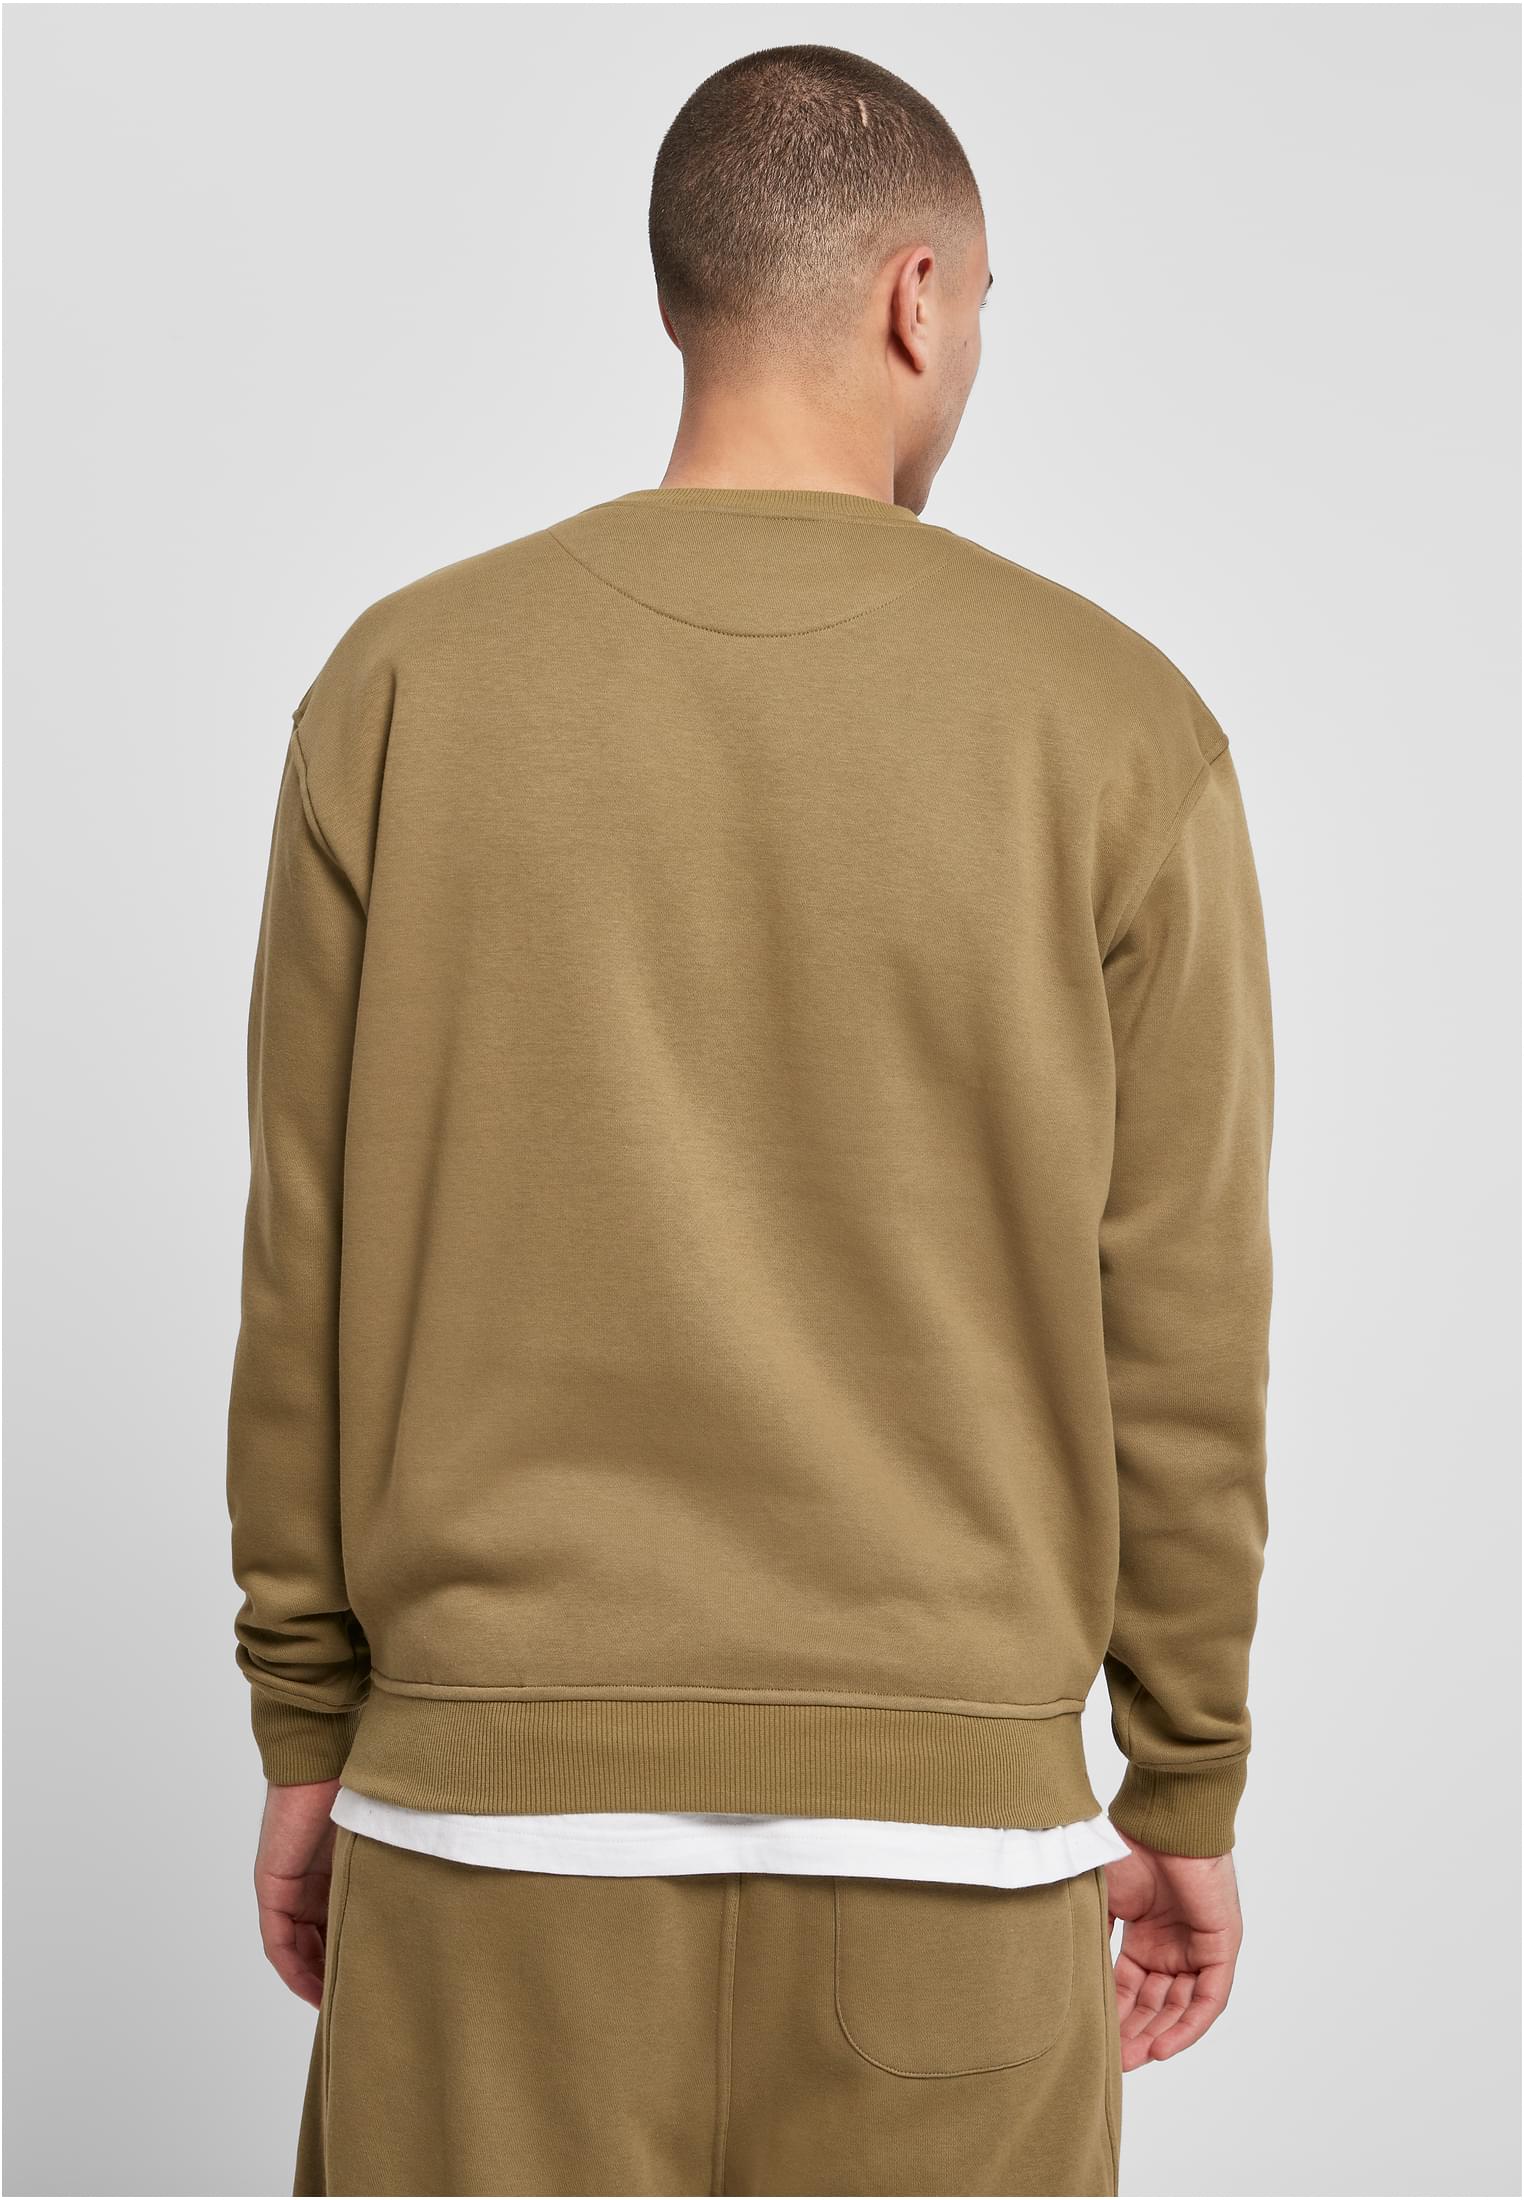 Crewnecks Crewneck Sweatshirt in Farbe tiniolive